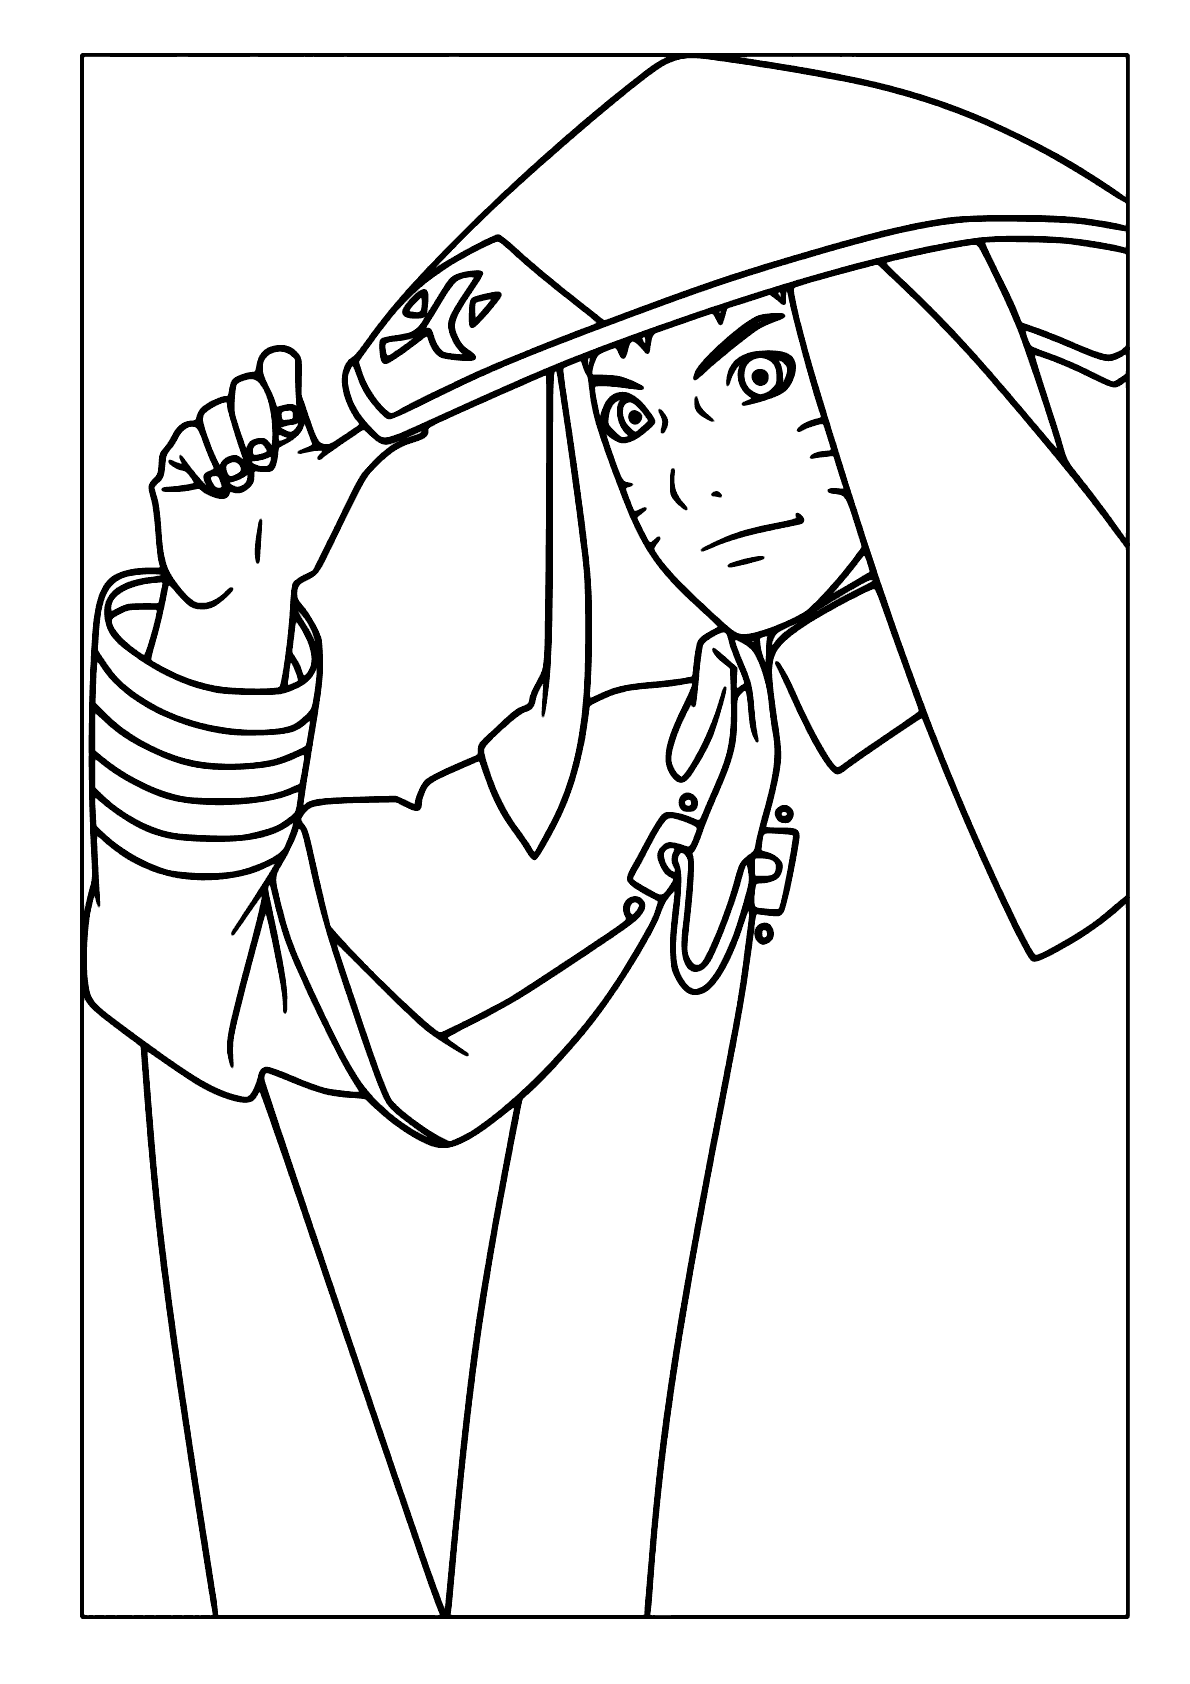 Como desenhar Naruto hokage - FÁCIL e passo a passo 